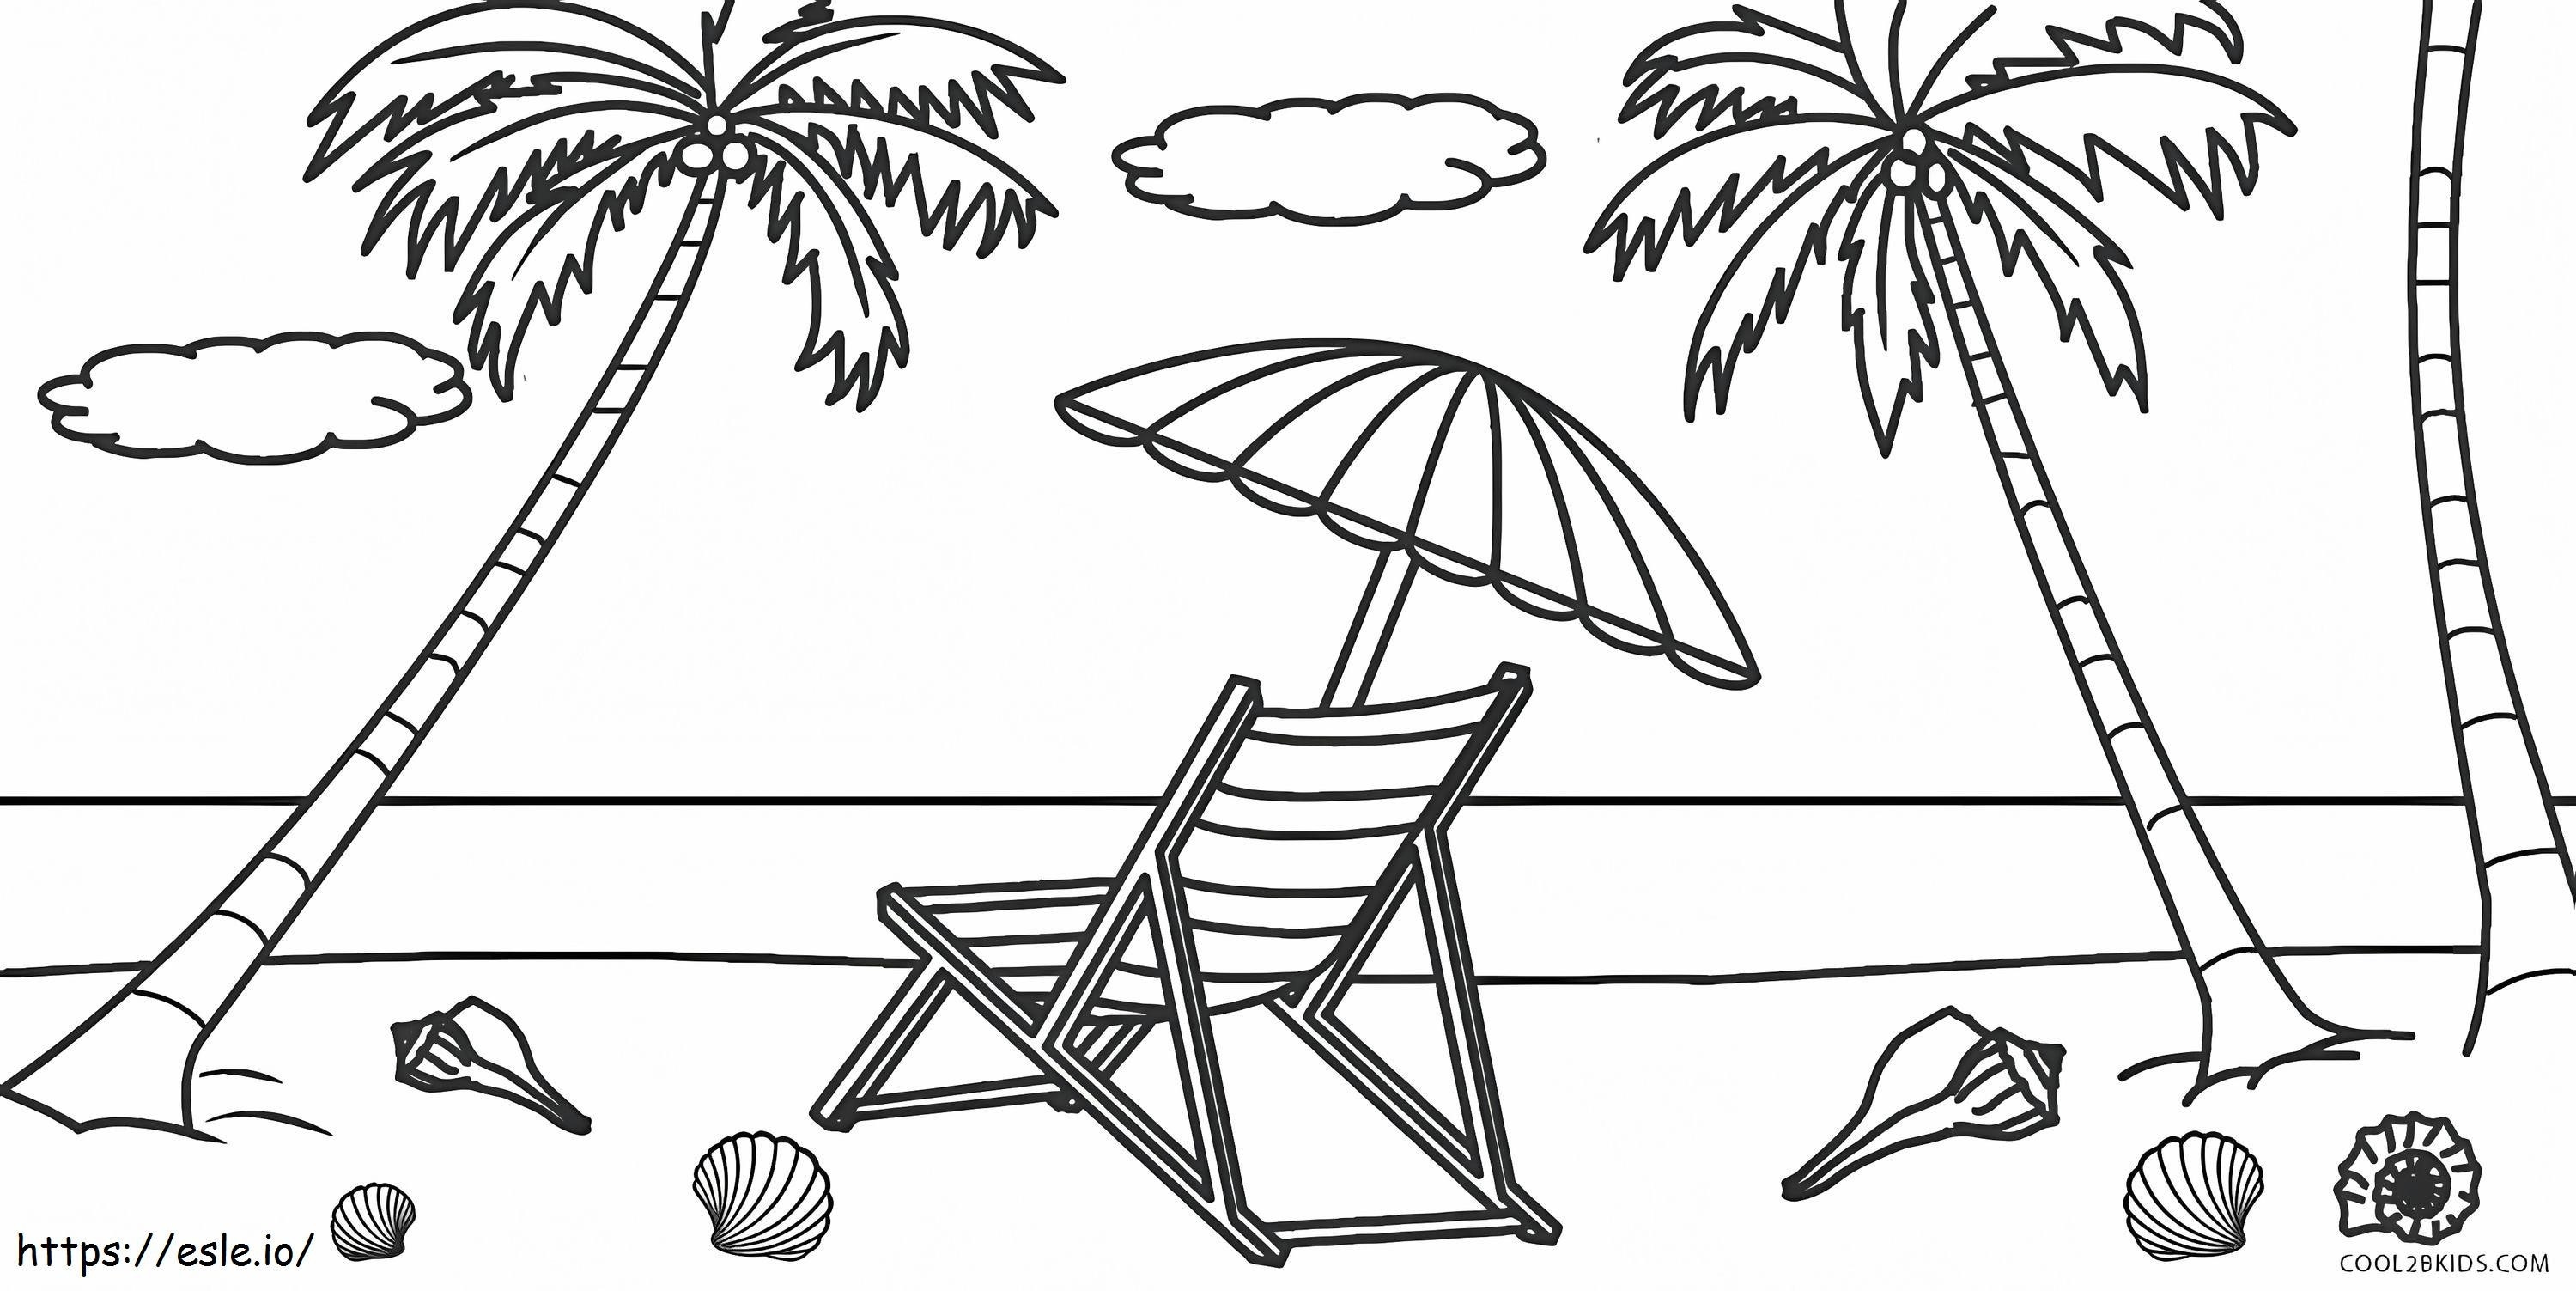 Stuhl und Sonnenschirm am Strand ausmalbilder